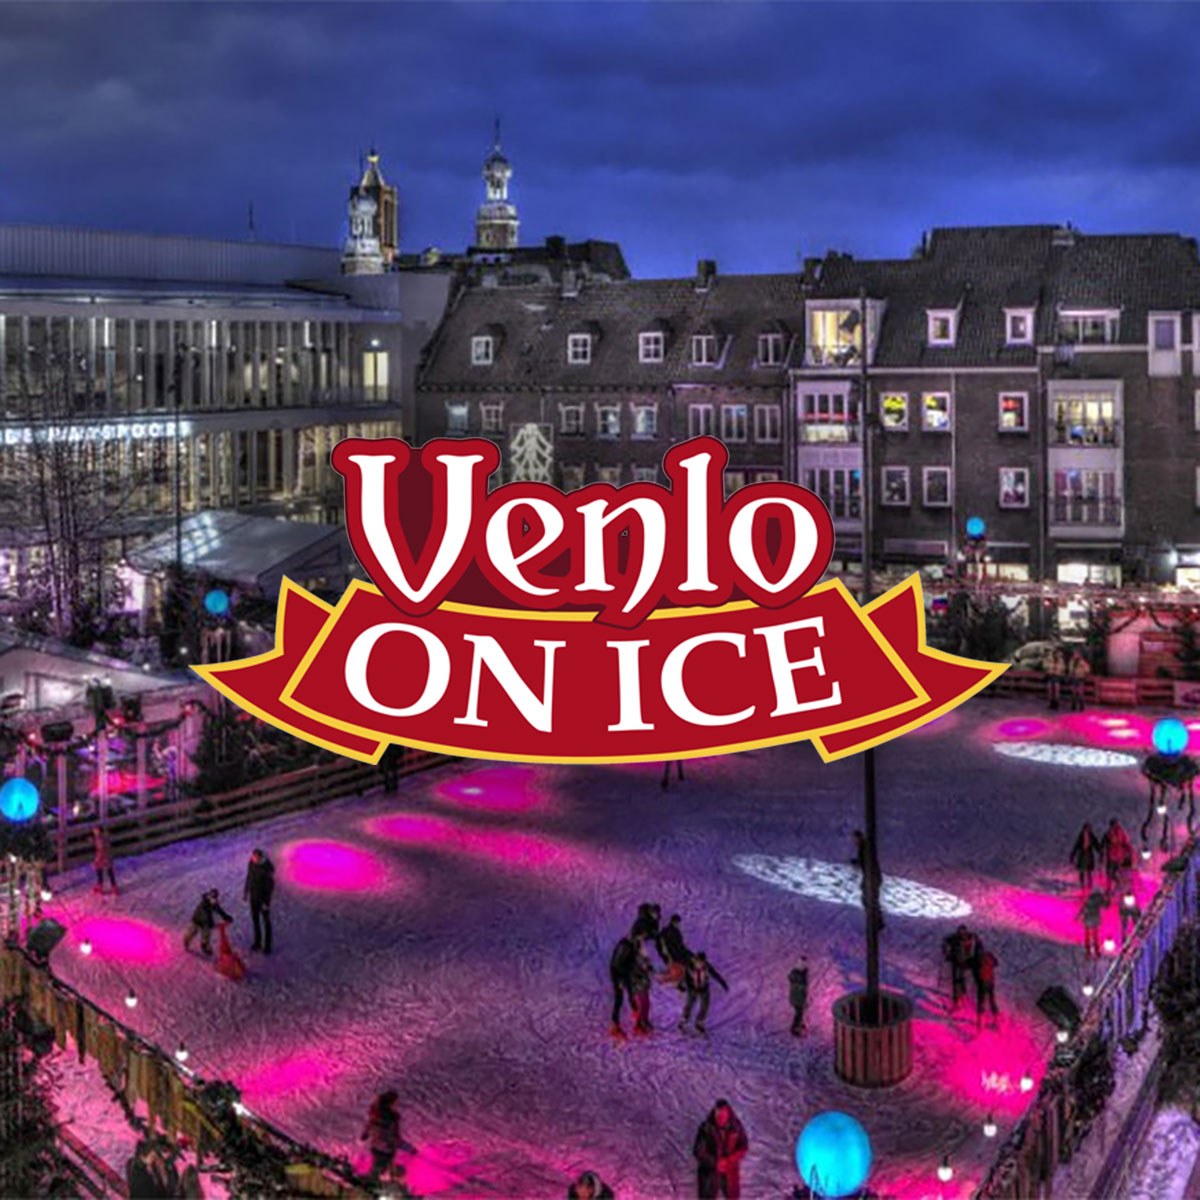 Venlo on Ice verplaatst naar 2021